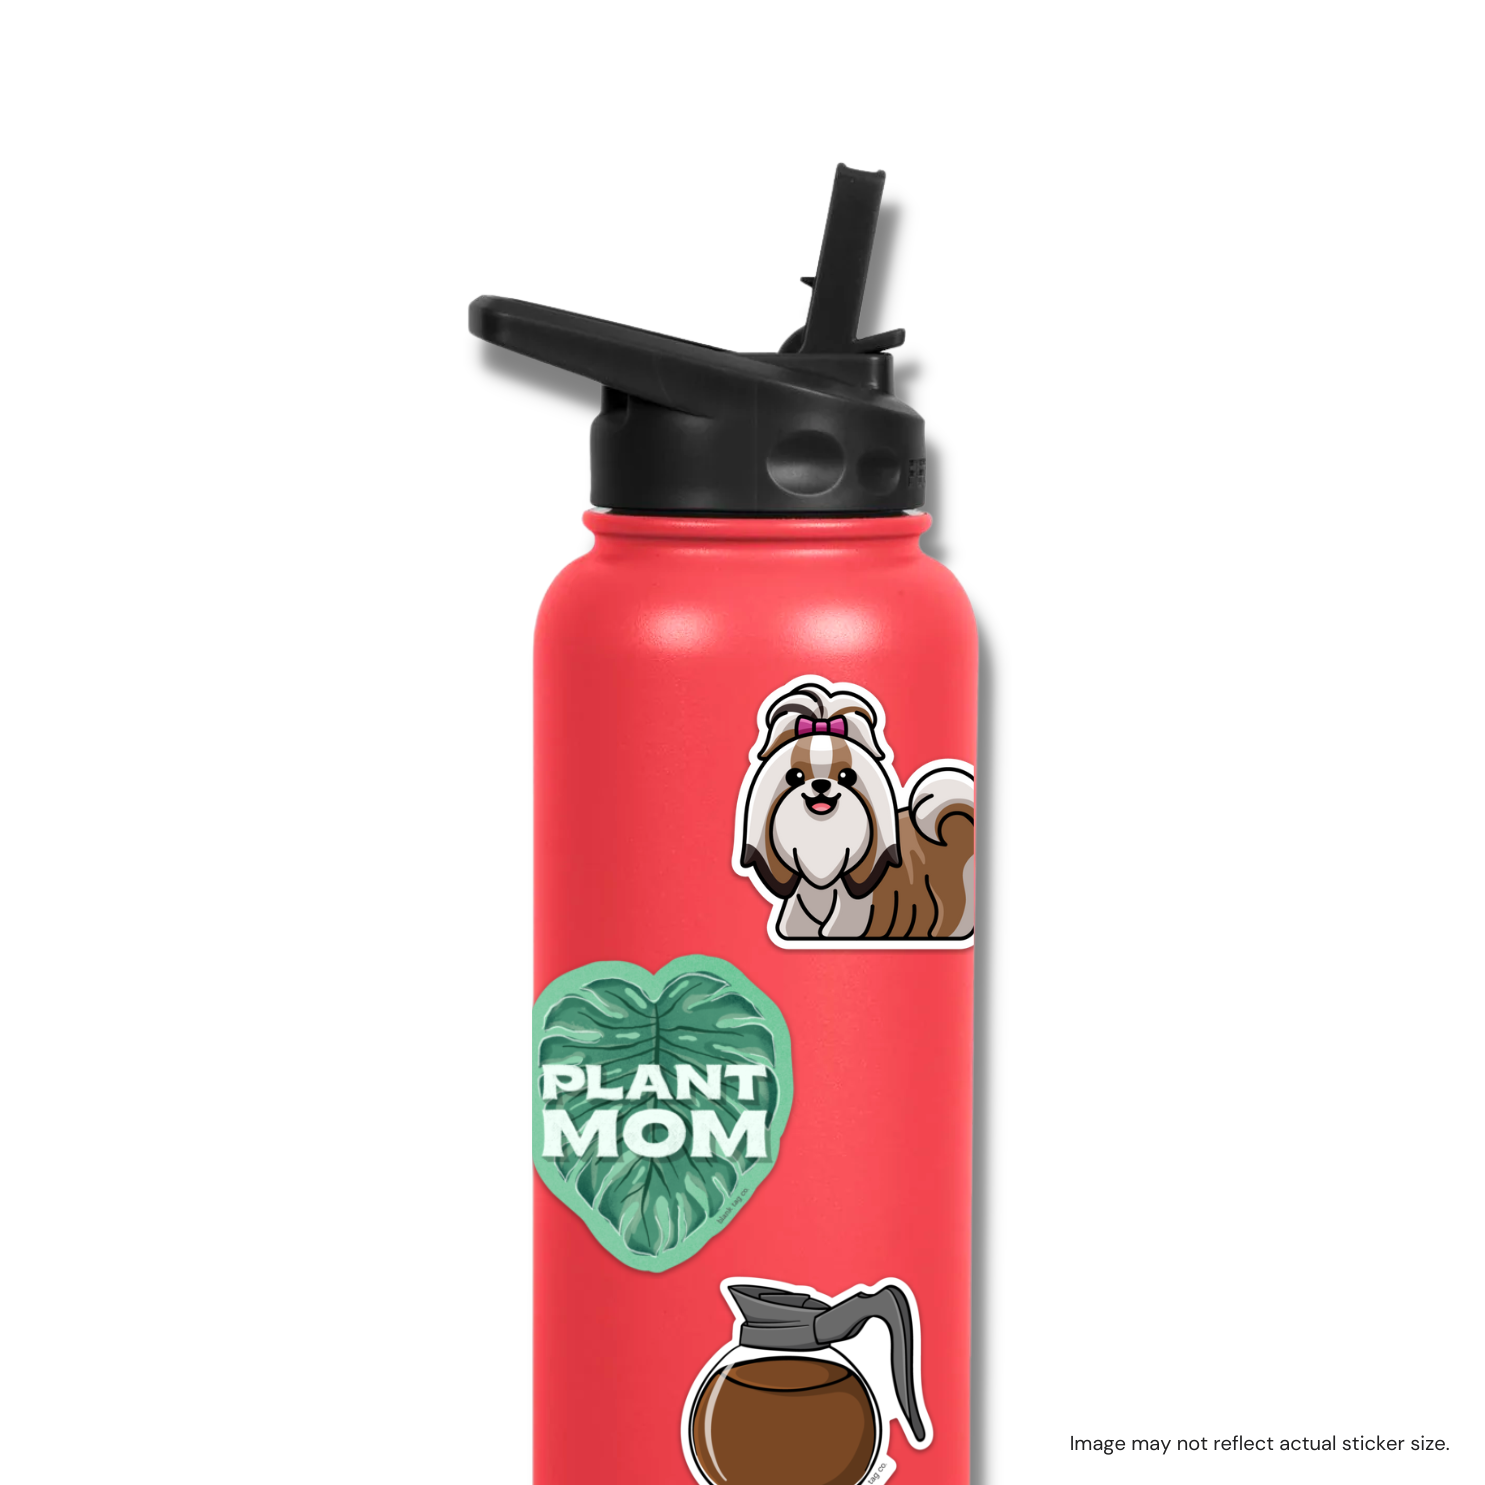 The Plant Mom Sticker